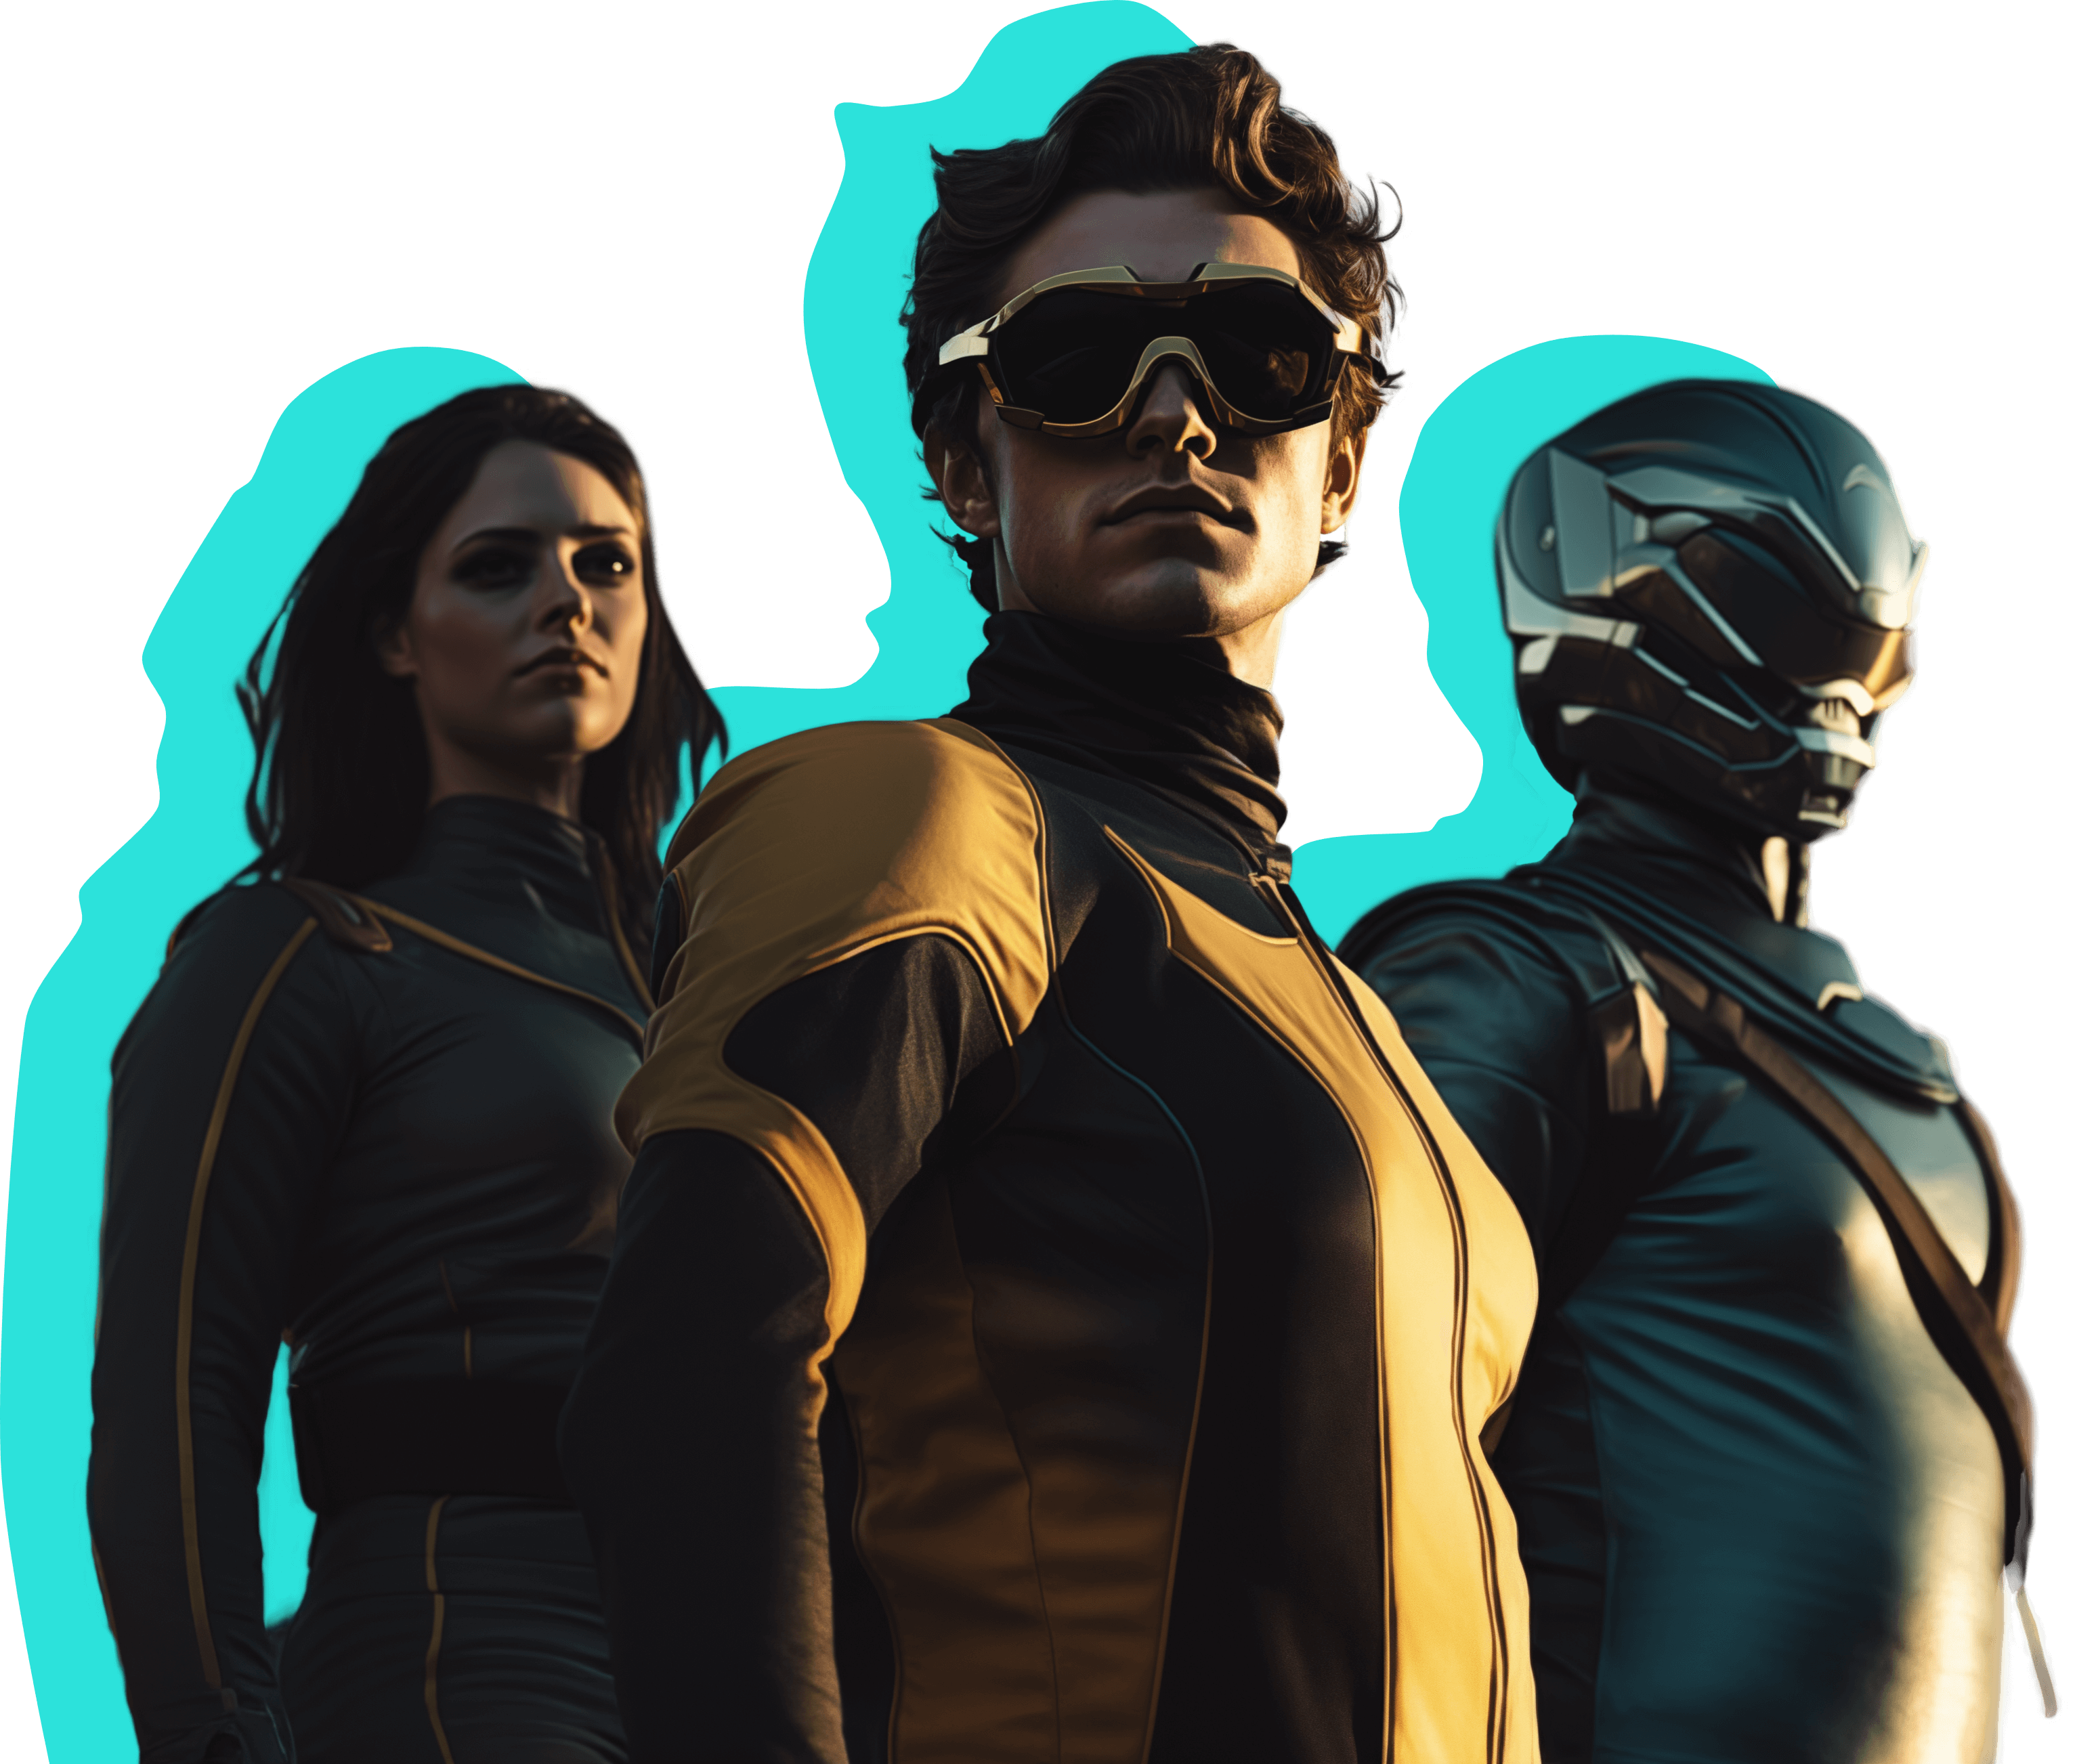 Drei Personen in futuristischen Superhelden-Outfits. Einer trägt eine dunkle Schutzbrille, ein anderer einen Metallhelm und der dritte einen eleganten dunklen Anzug. Türkise Umrisse heben jede Figur hervor.